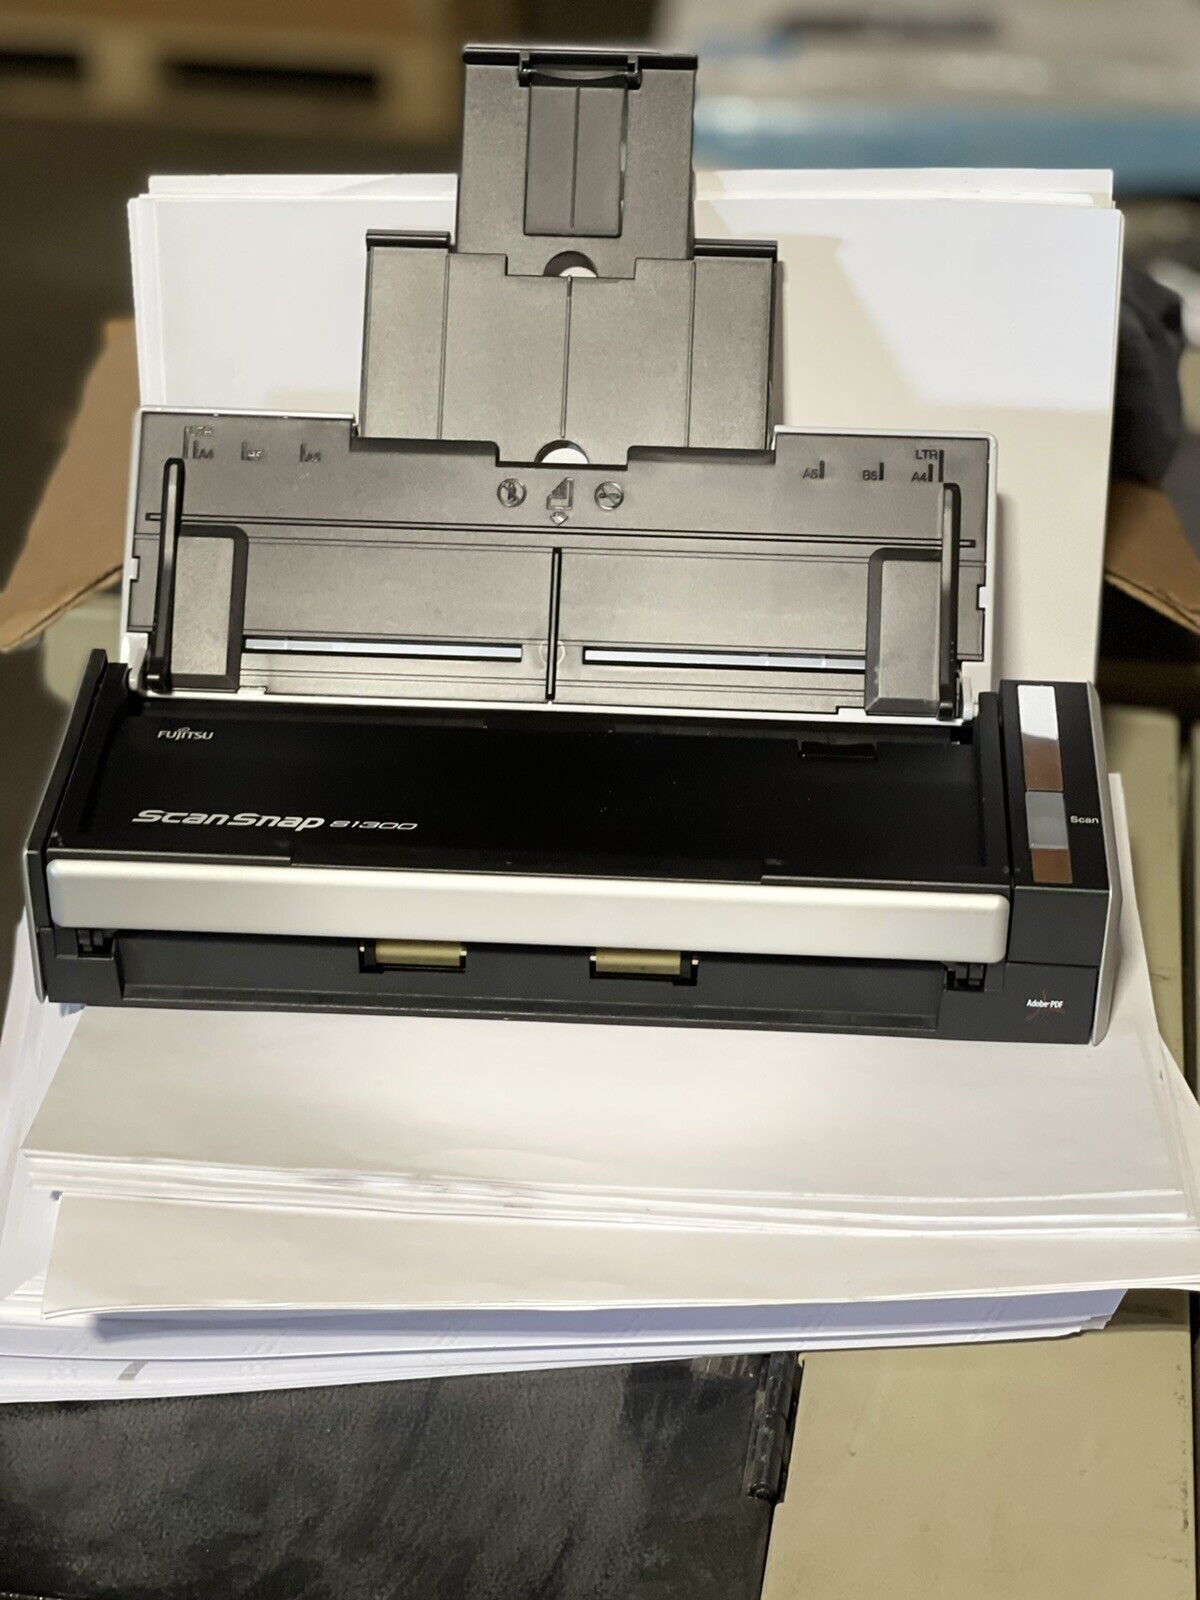 Fujitsu S1300i ScanSnap Document Scanner for sale online | eBay